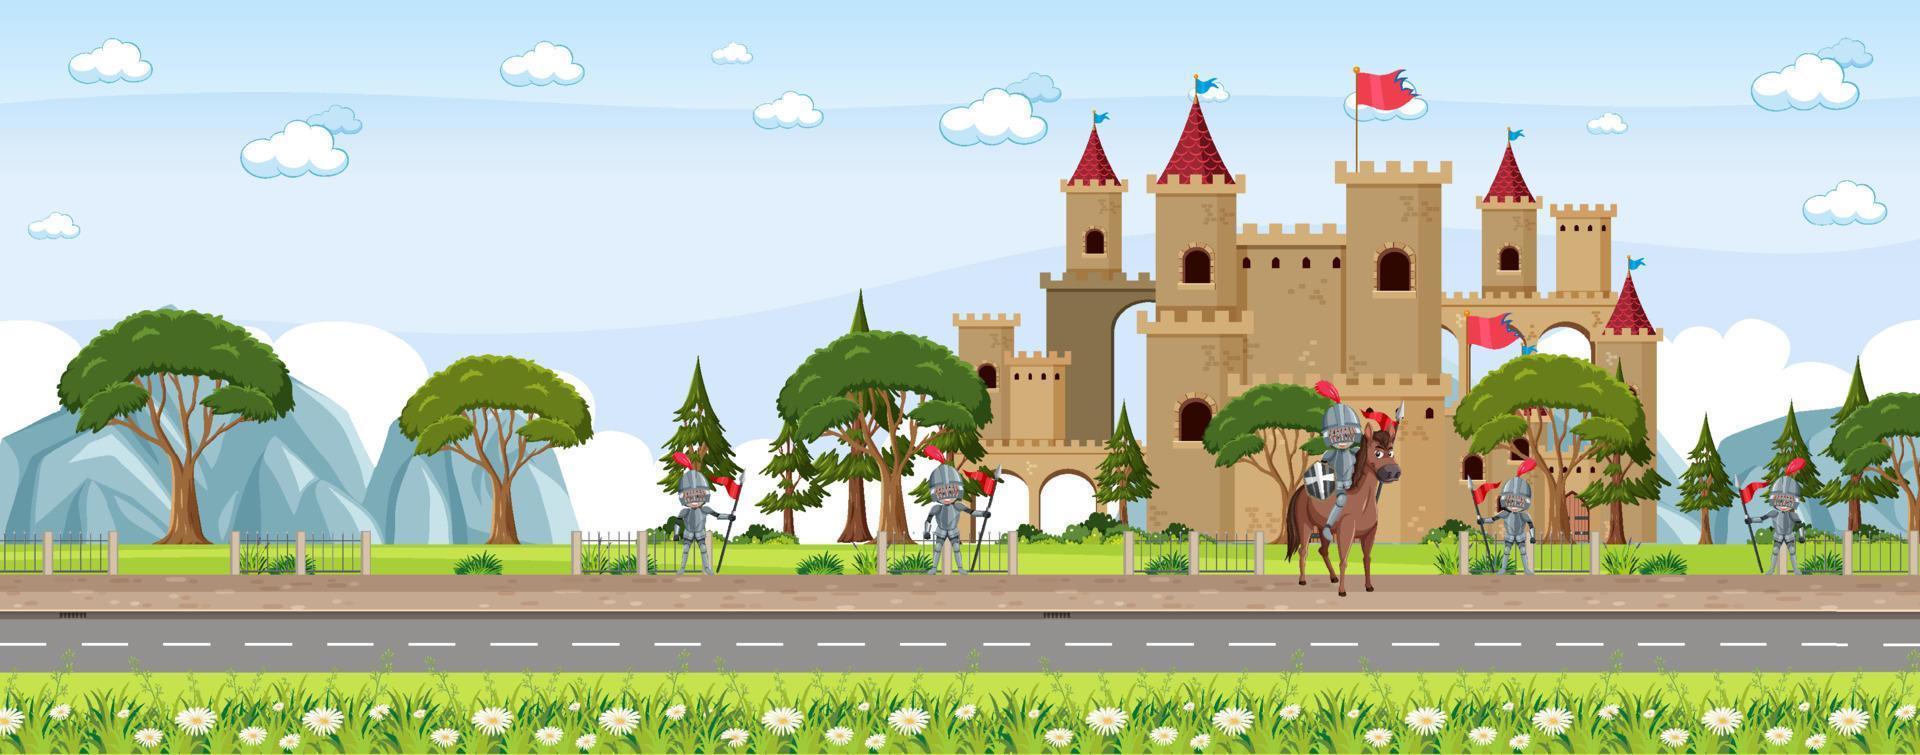 cena da cidade medieval com aldeões e castelo vetor